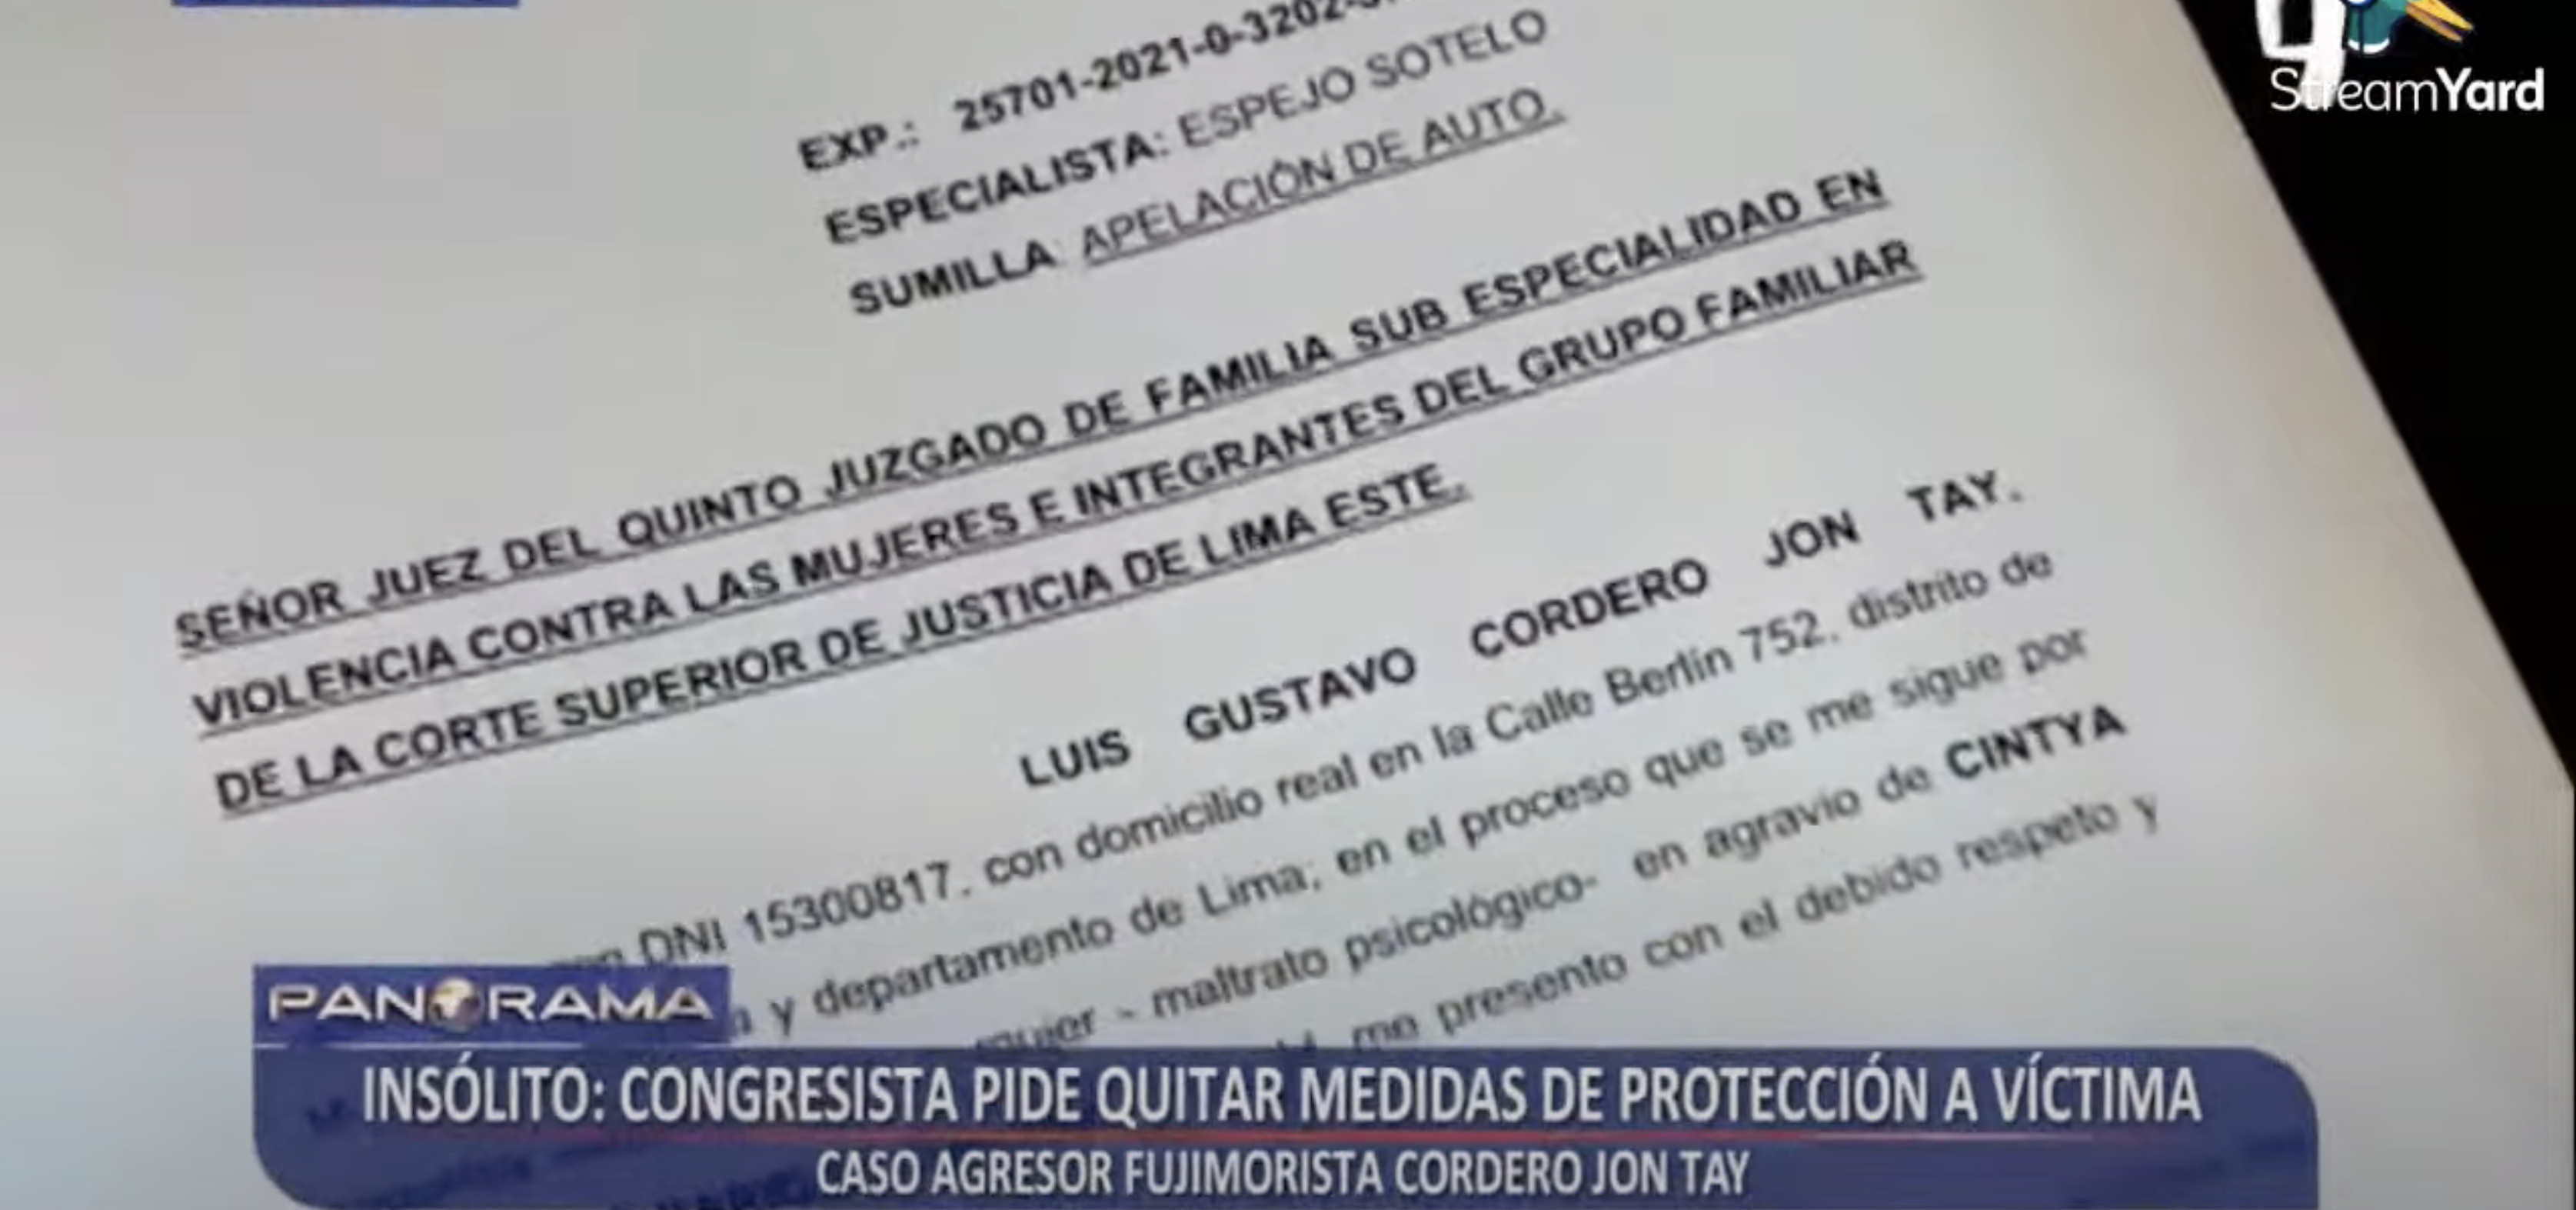 Congresista Luis Cordero pidió que no se otorgue protección a víctima que lo acusó de agresiones